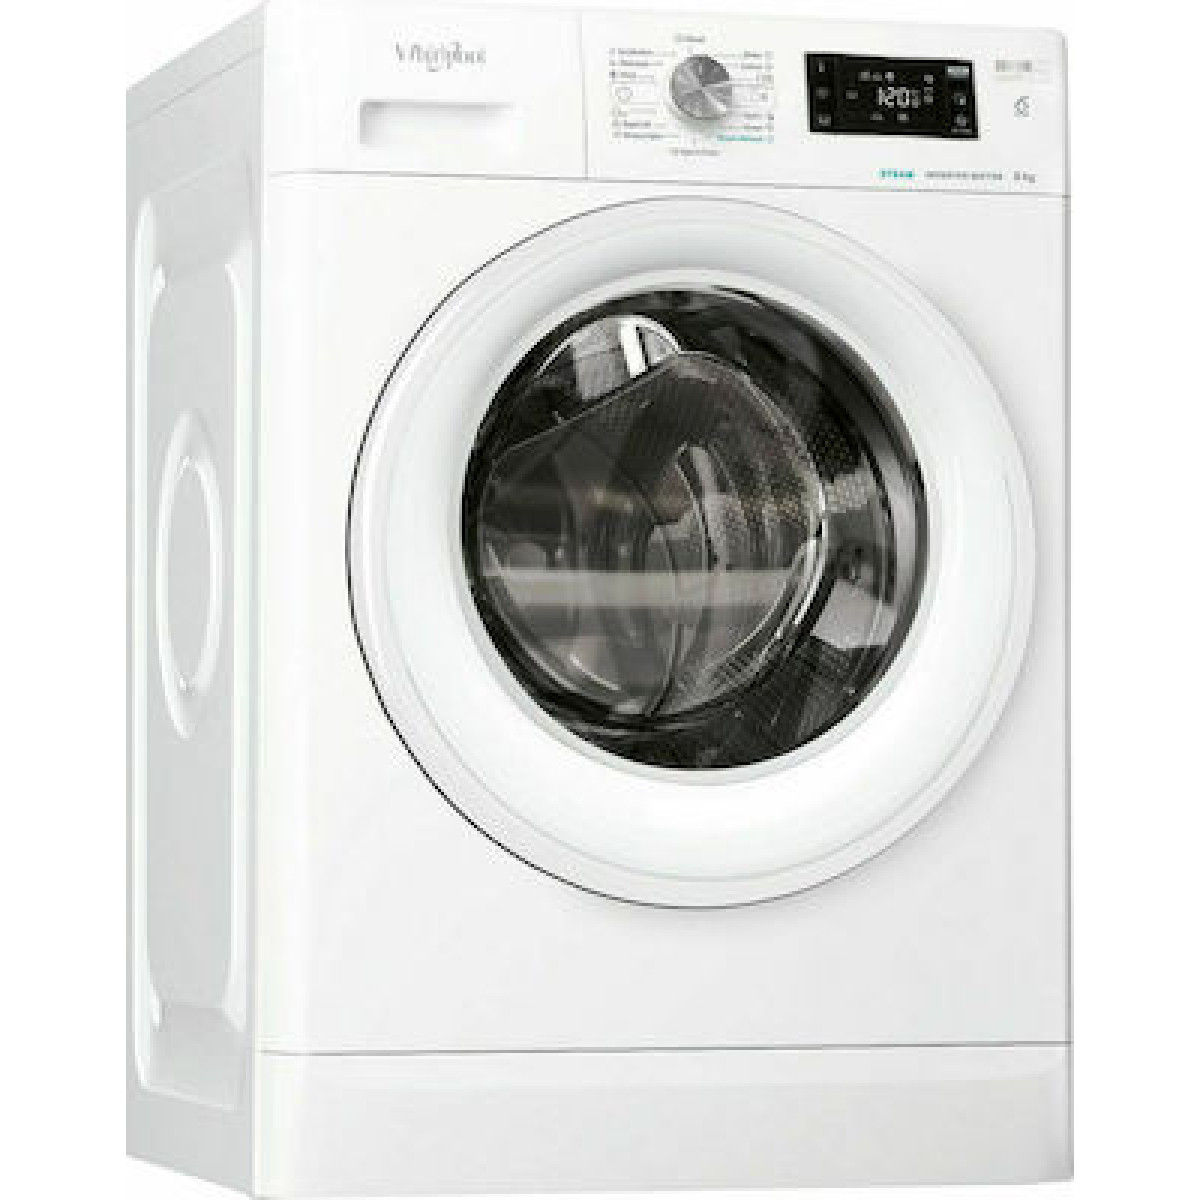 Πλυντήριο Ρούχων Whirlpool FFB 8258 WV EE 8kg με Ατμό 1200 Στροφών Πλυντήρια ρούχων